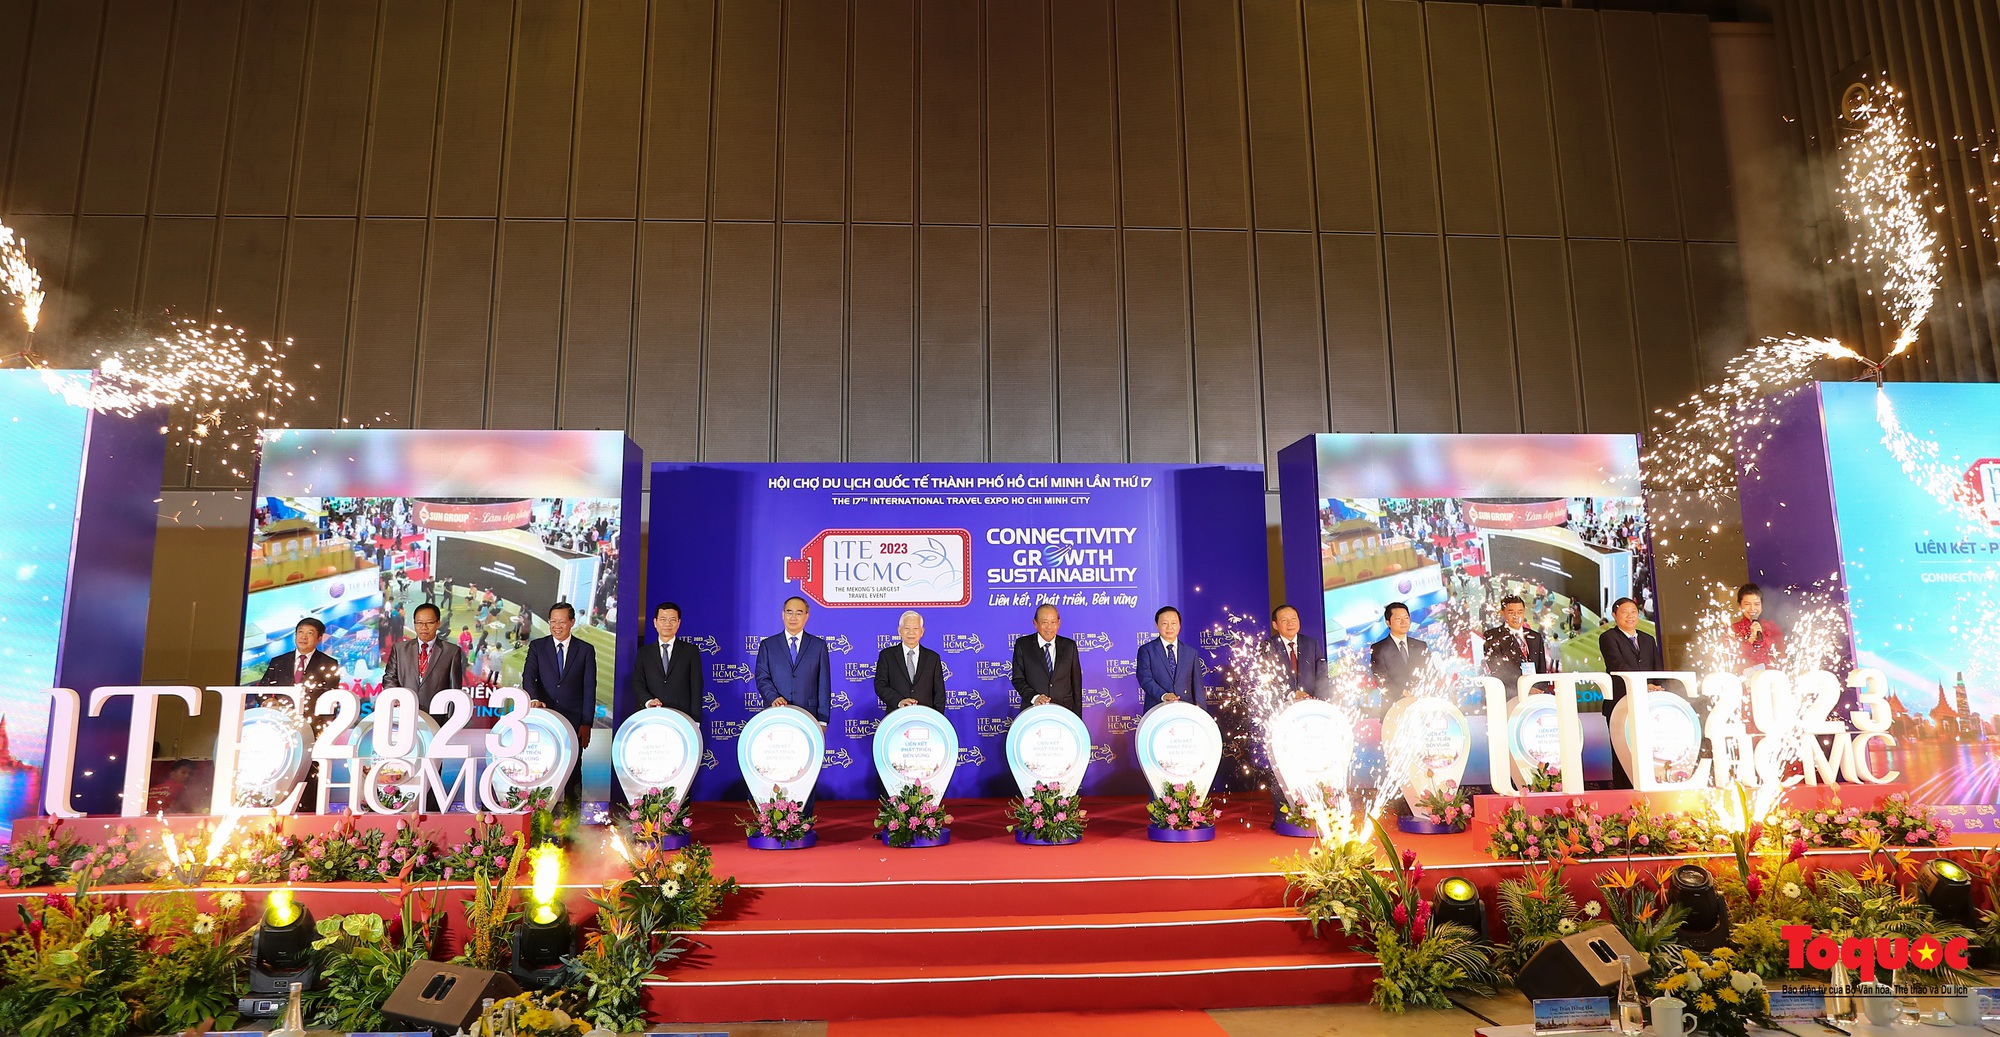 Chùm ảnh: Khai mạc Hội chợ Du lịch Quốc tế TP Hồ Chí Minh lần thứ 17 - Ảnh 5.